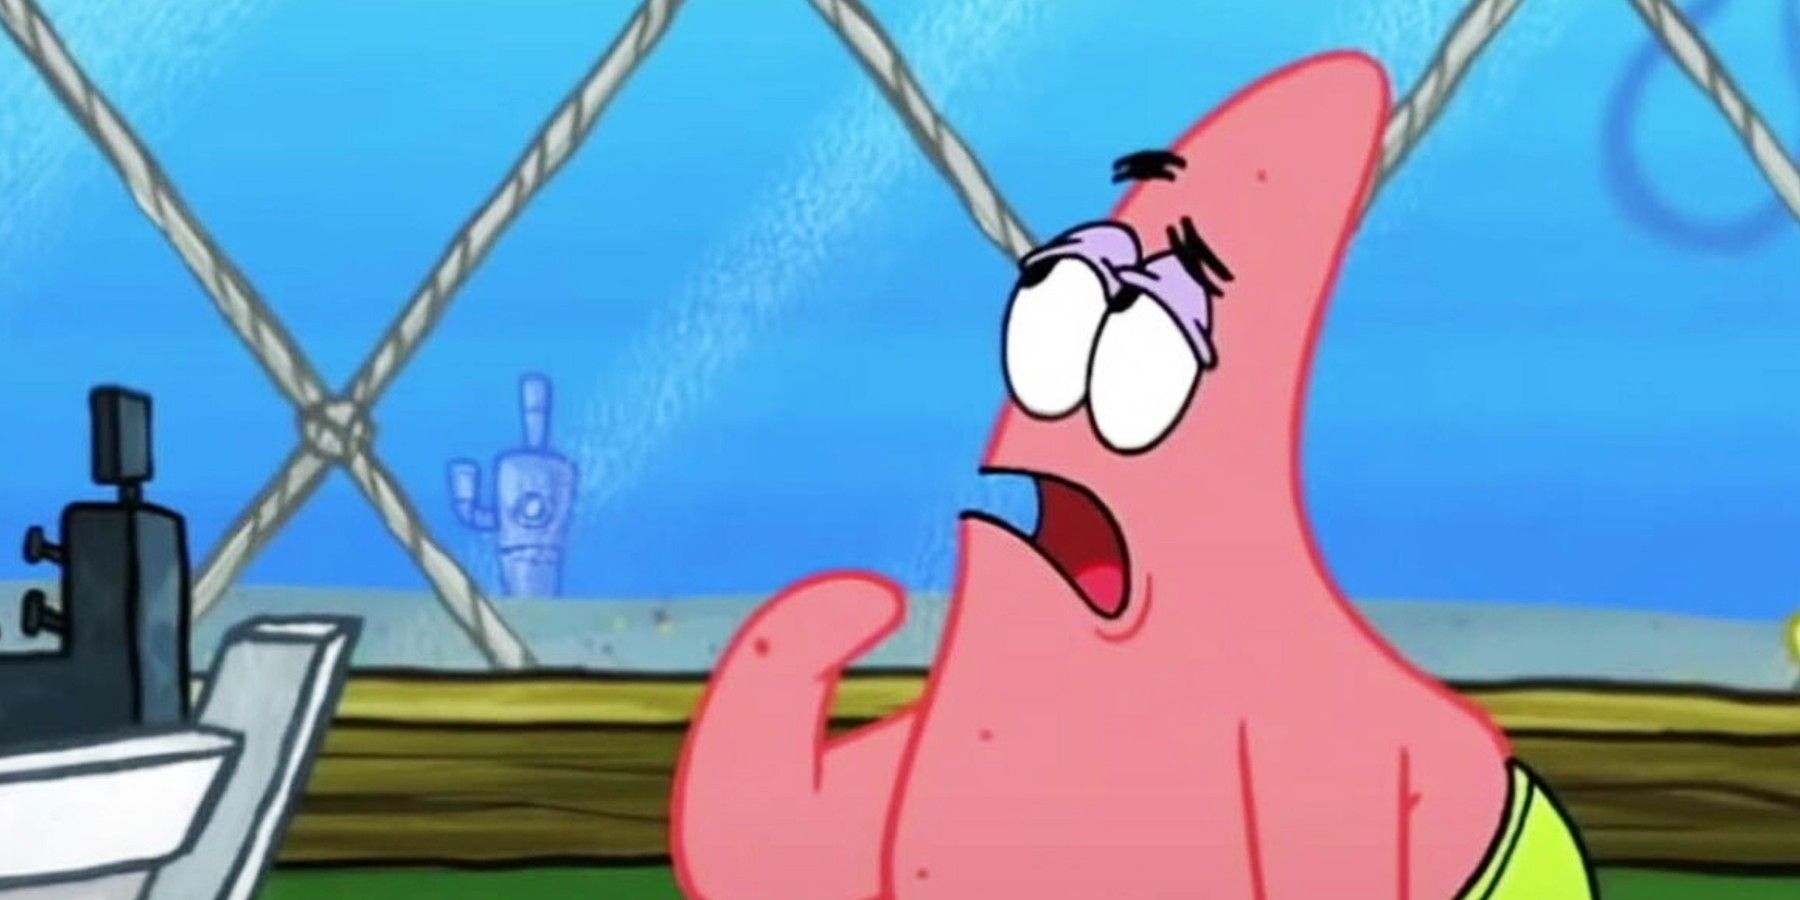 Patrick looking confused at the Krusty Krab in SpongeBob Squarepants